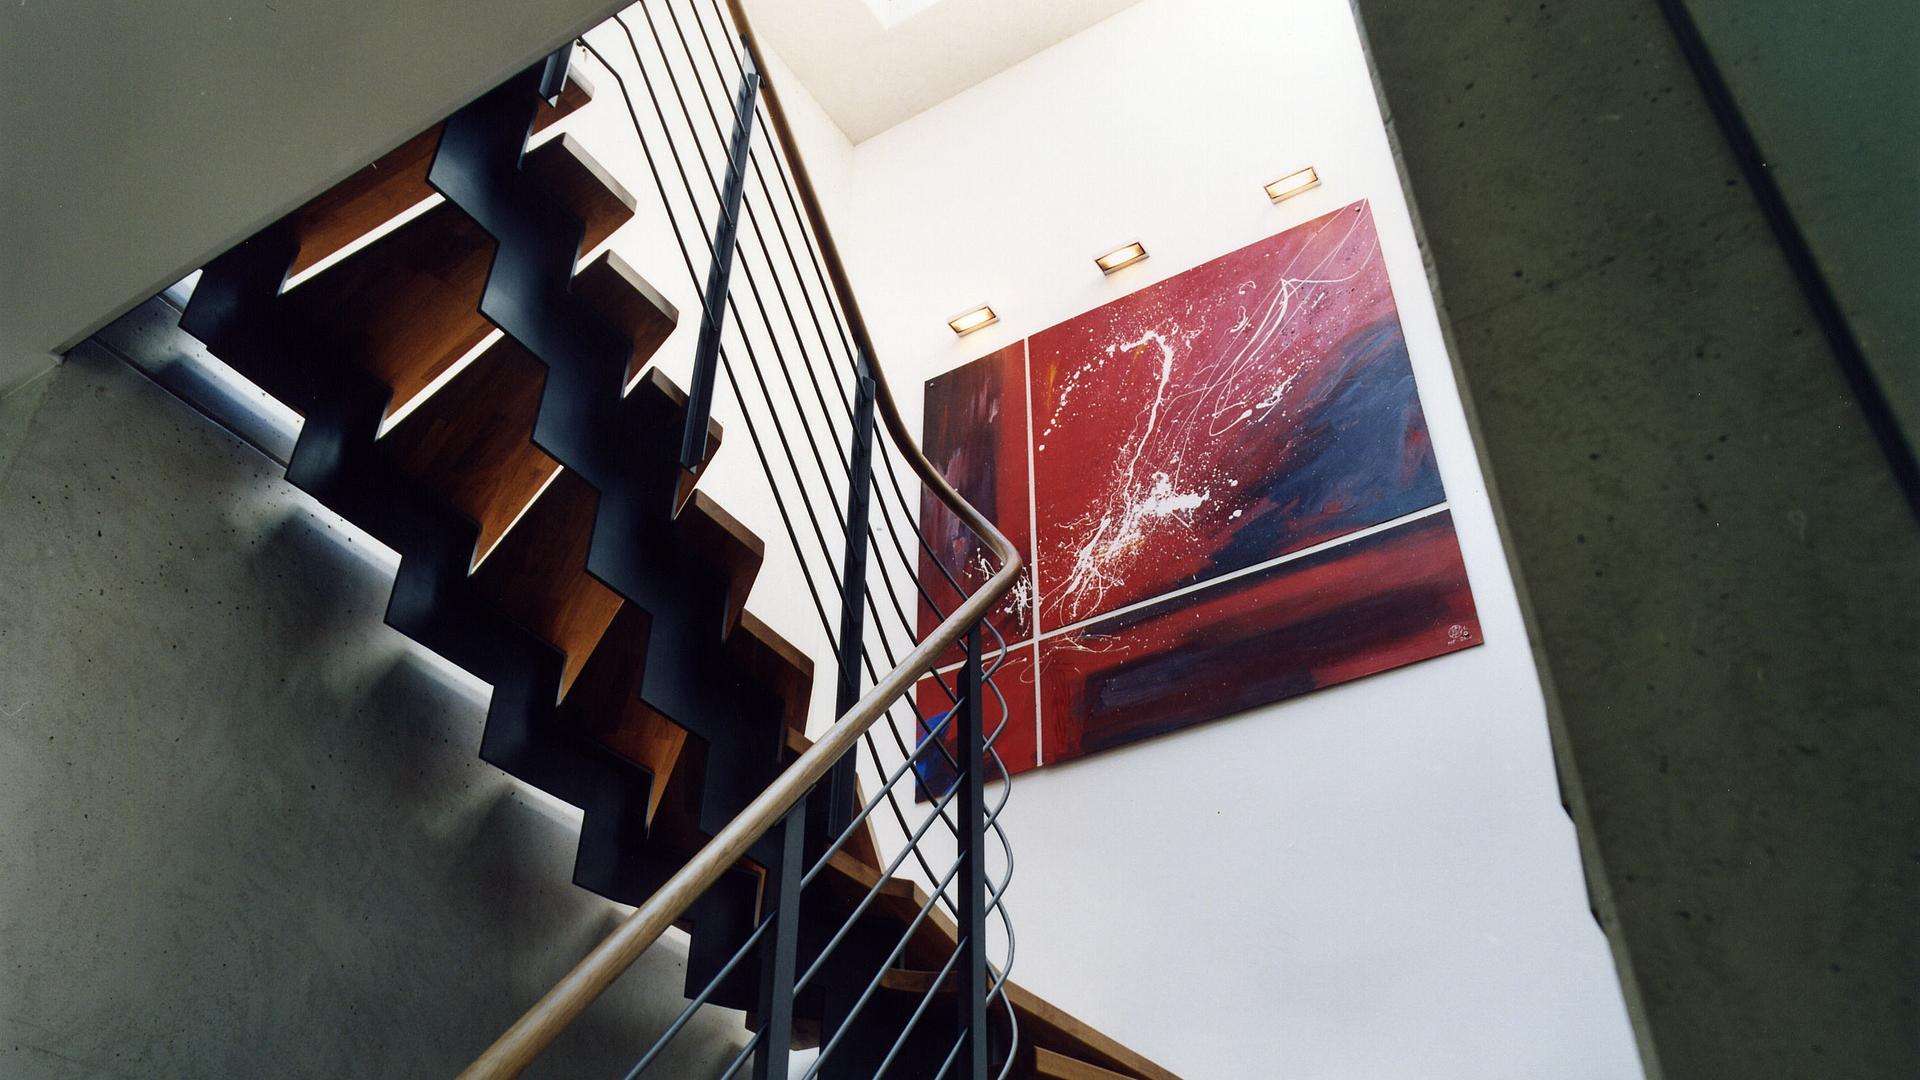 Bild: Sichtbeton im modernen Treppenhaus aus Stahl und Holz